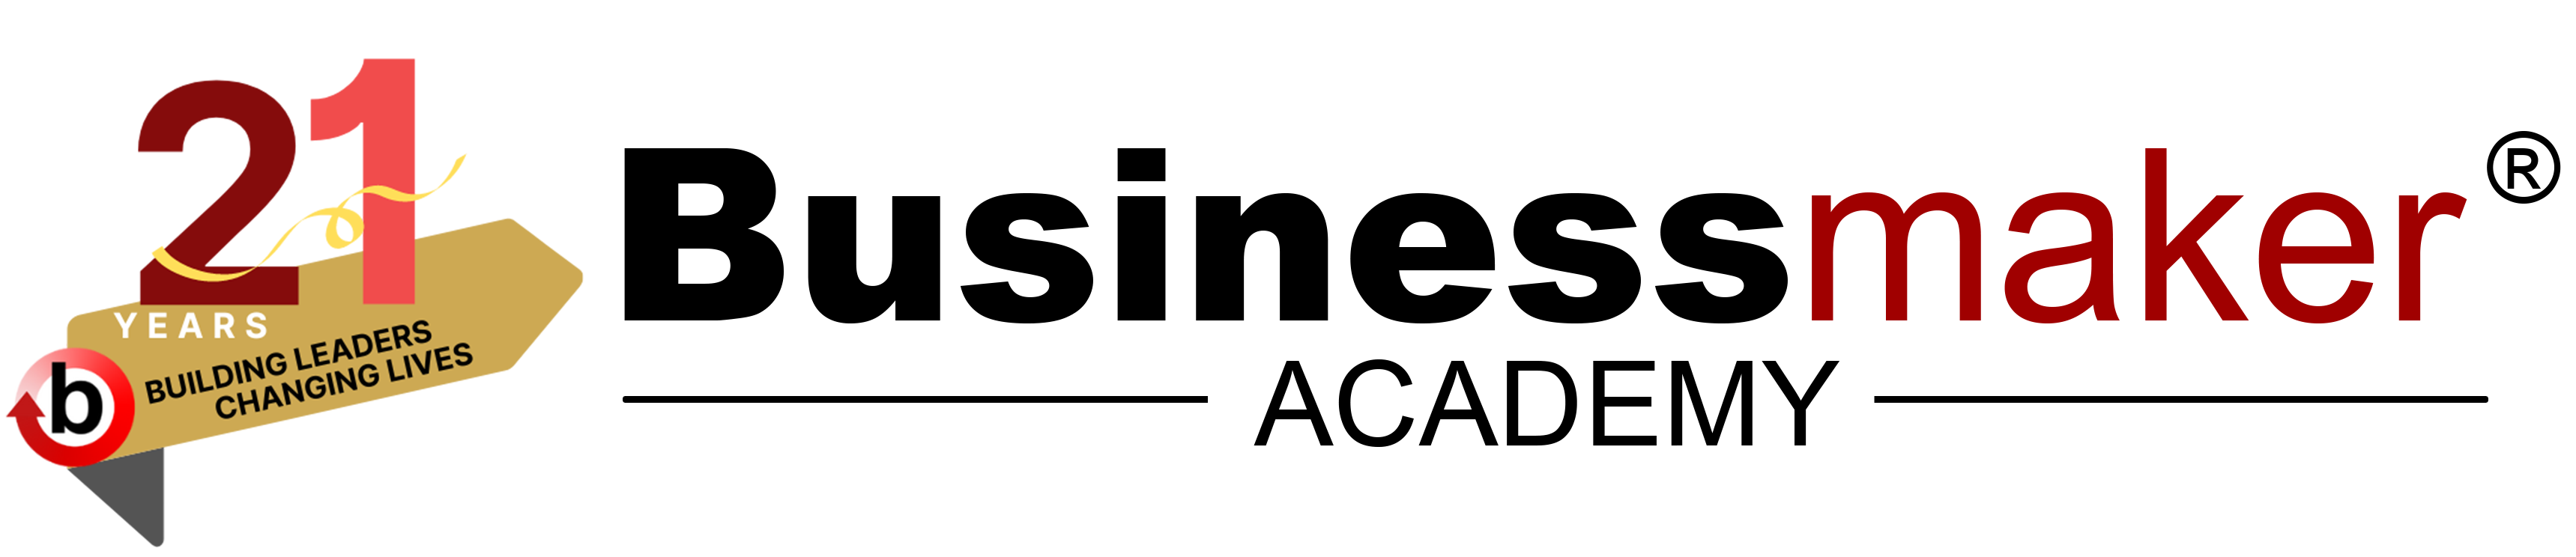 Business maker logo